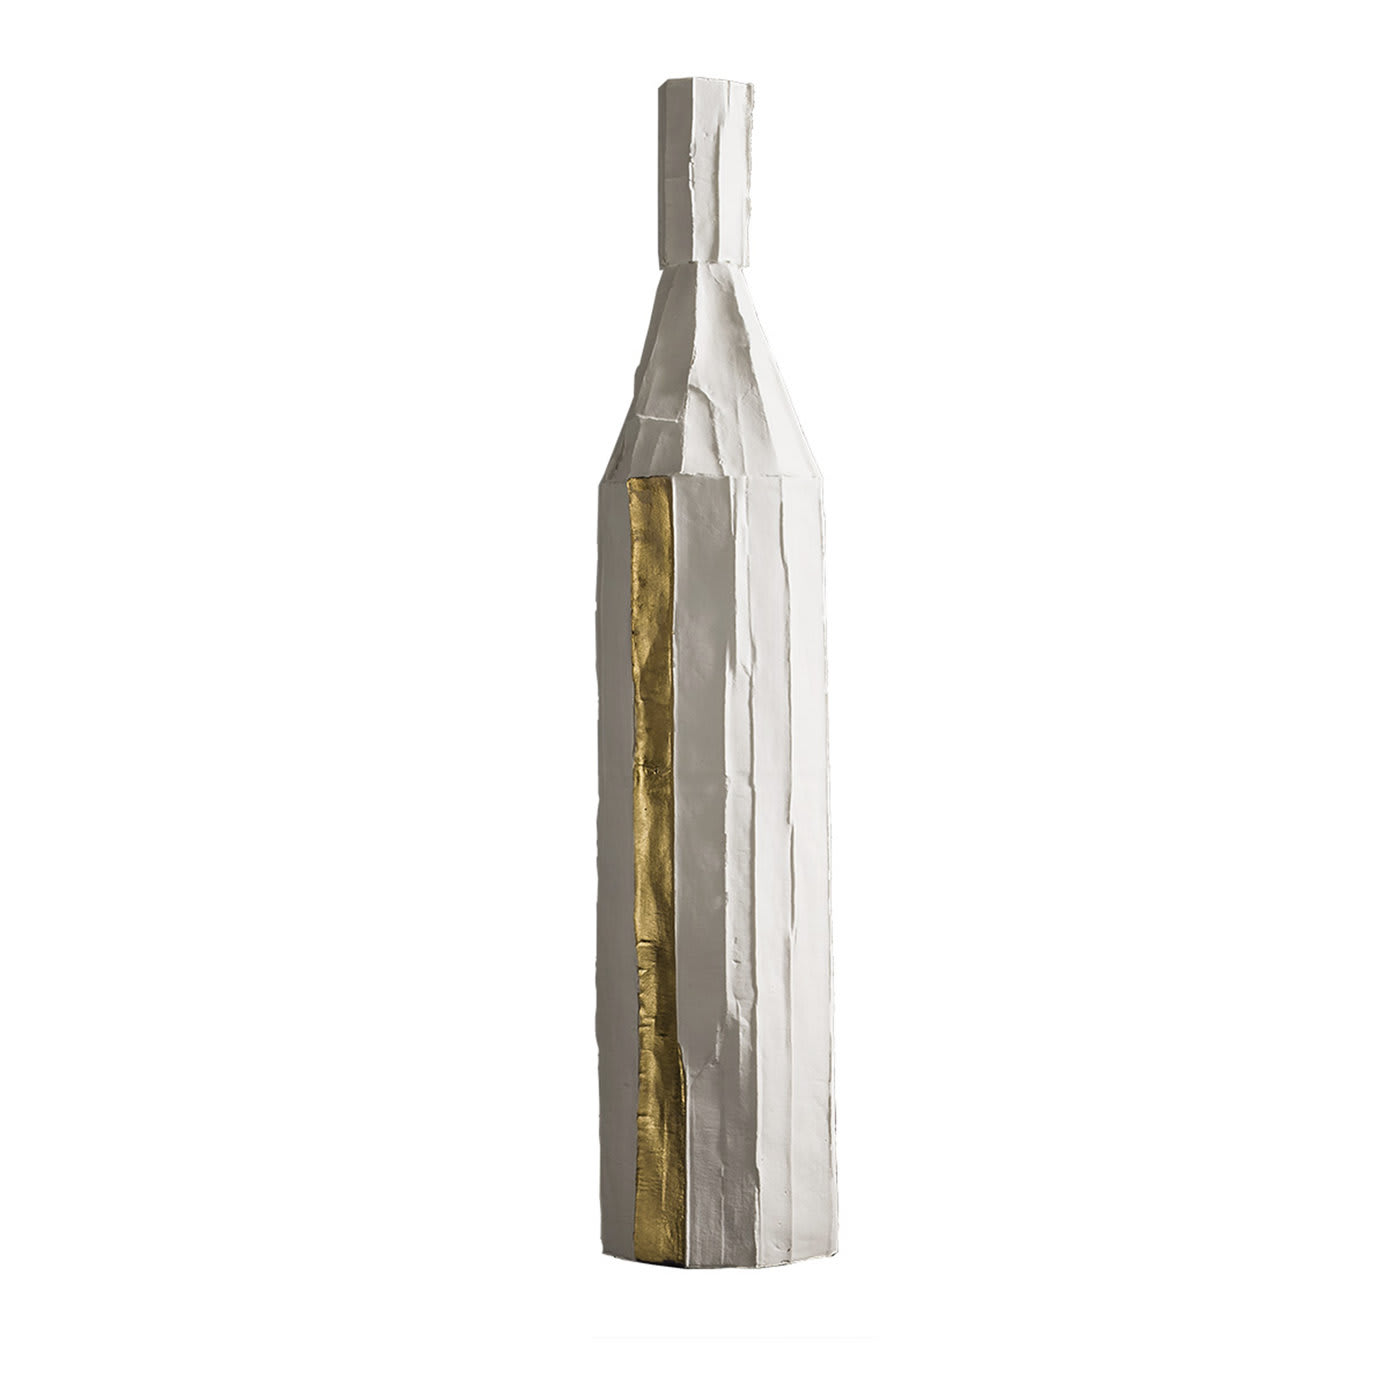 Cartocci Corteccia White and Gold Decorative Bottle - Paola Paronetto